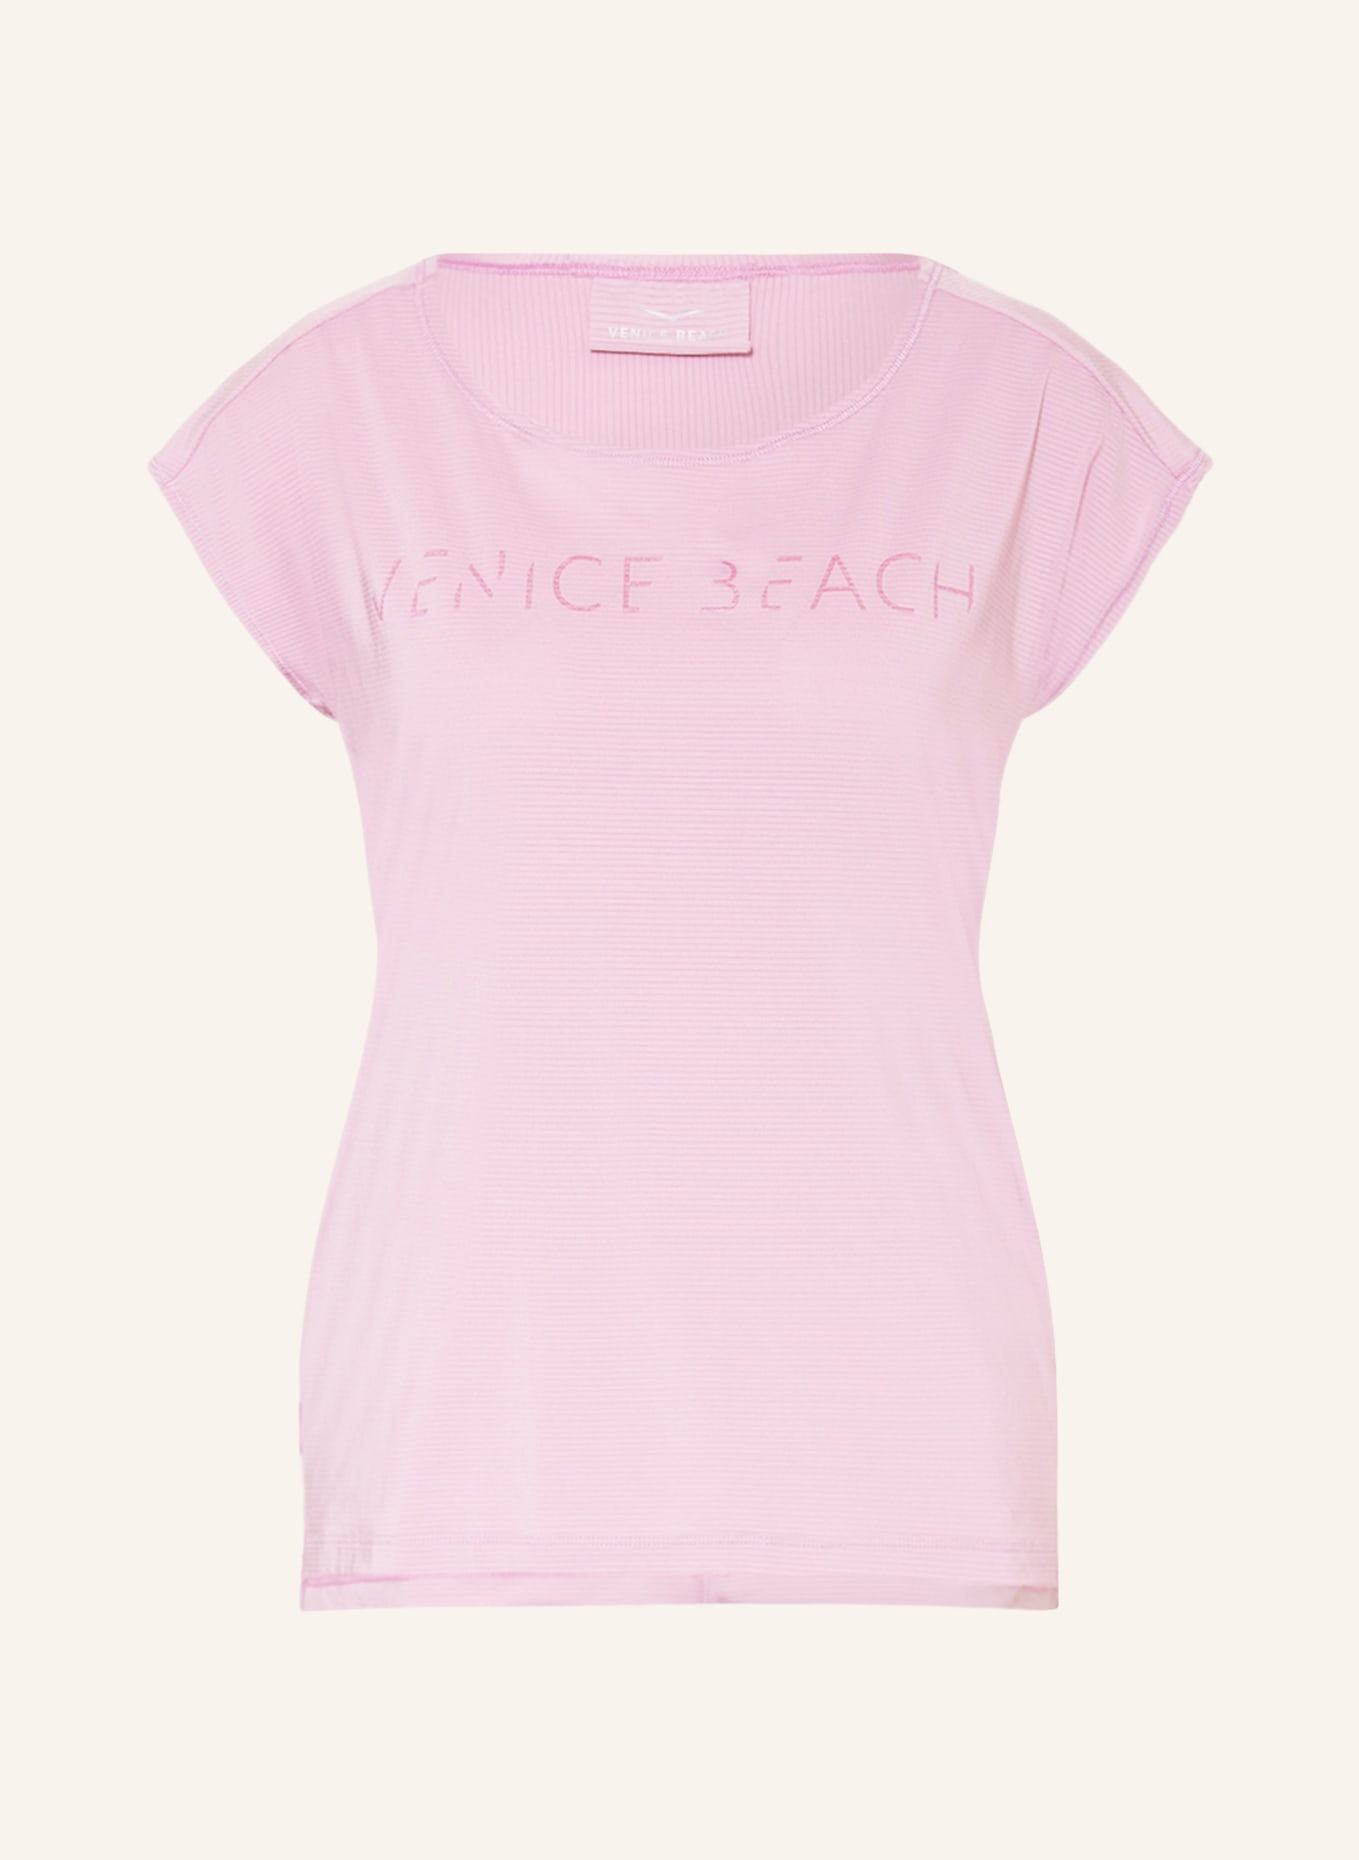 VENICE BEACH T-Shirt ALICE, Farbe: LILA (Bild 1)